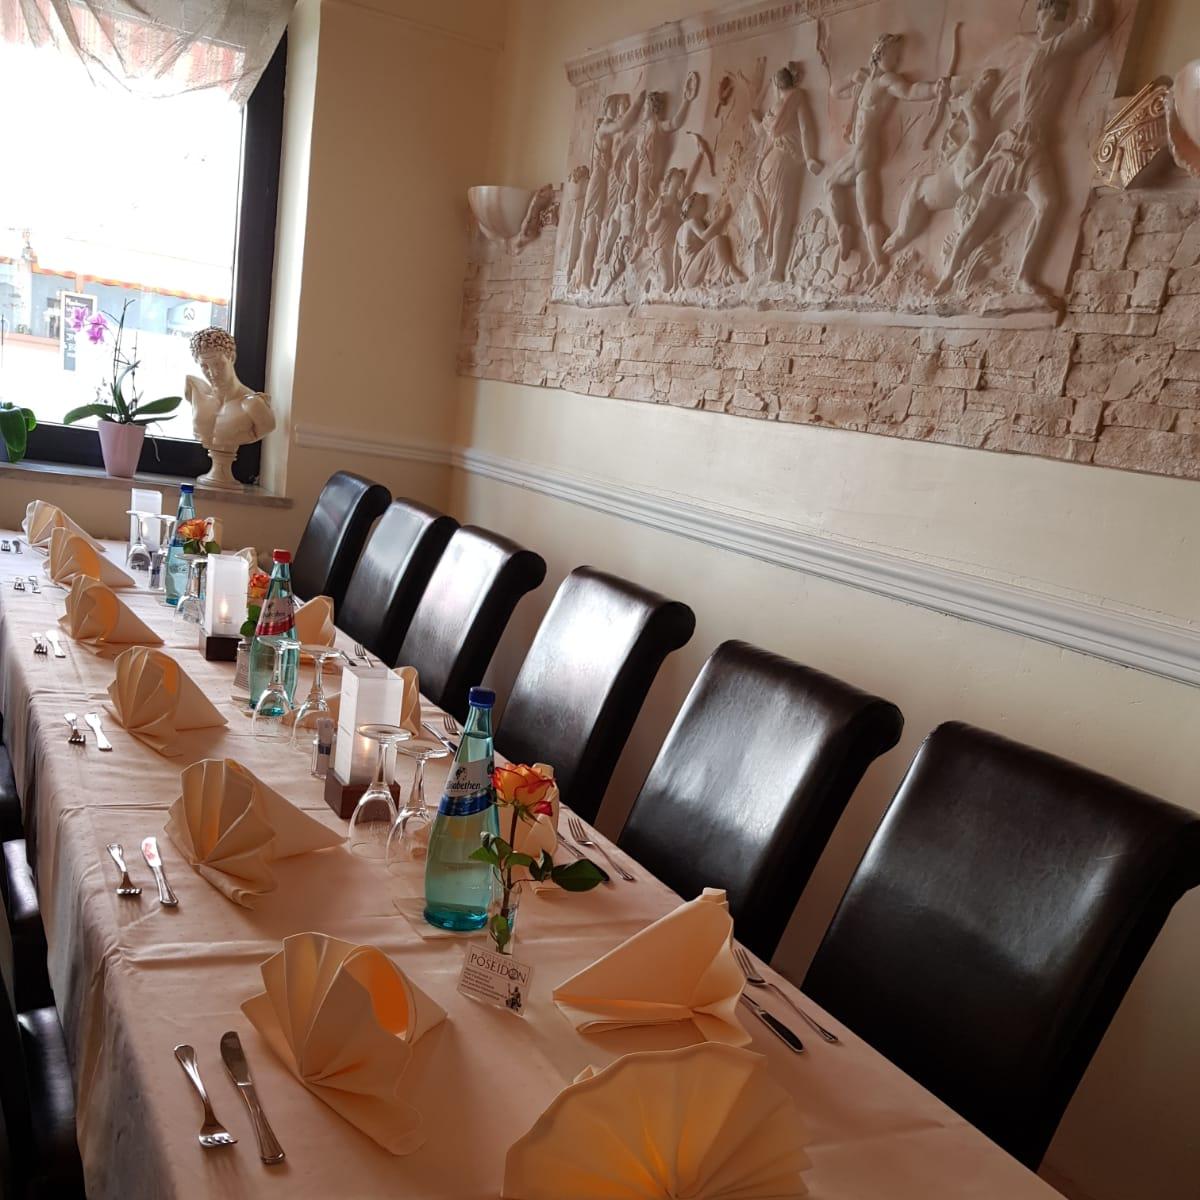 Restaurant "Restaurant Poseidon" in Frankenthal